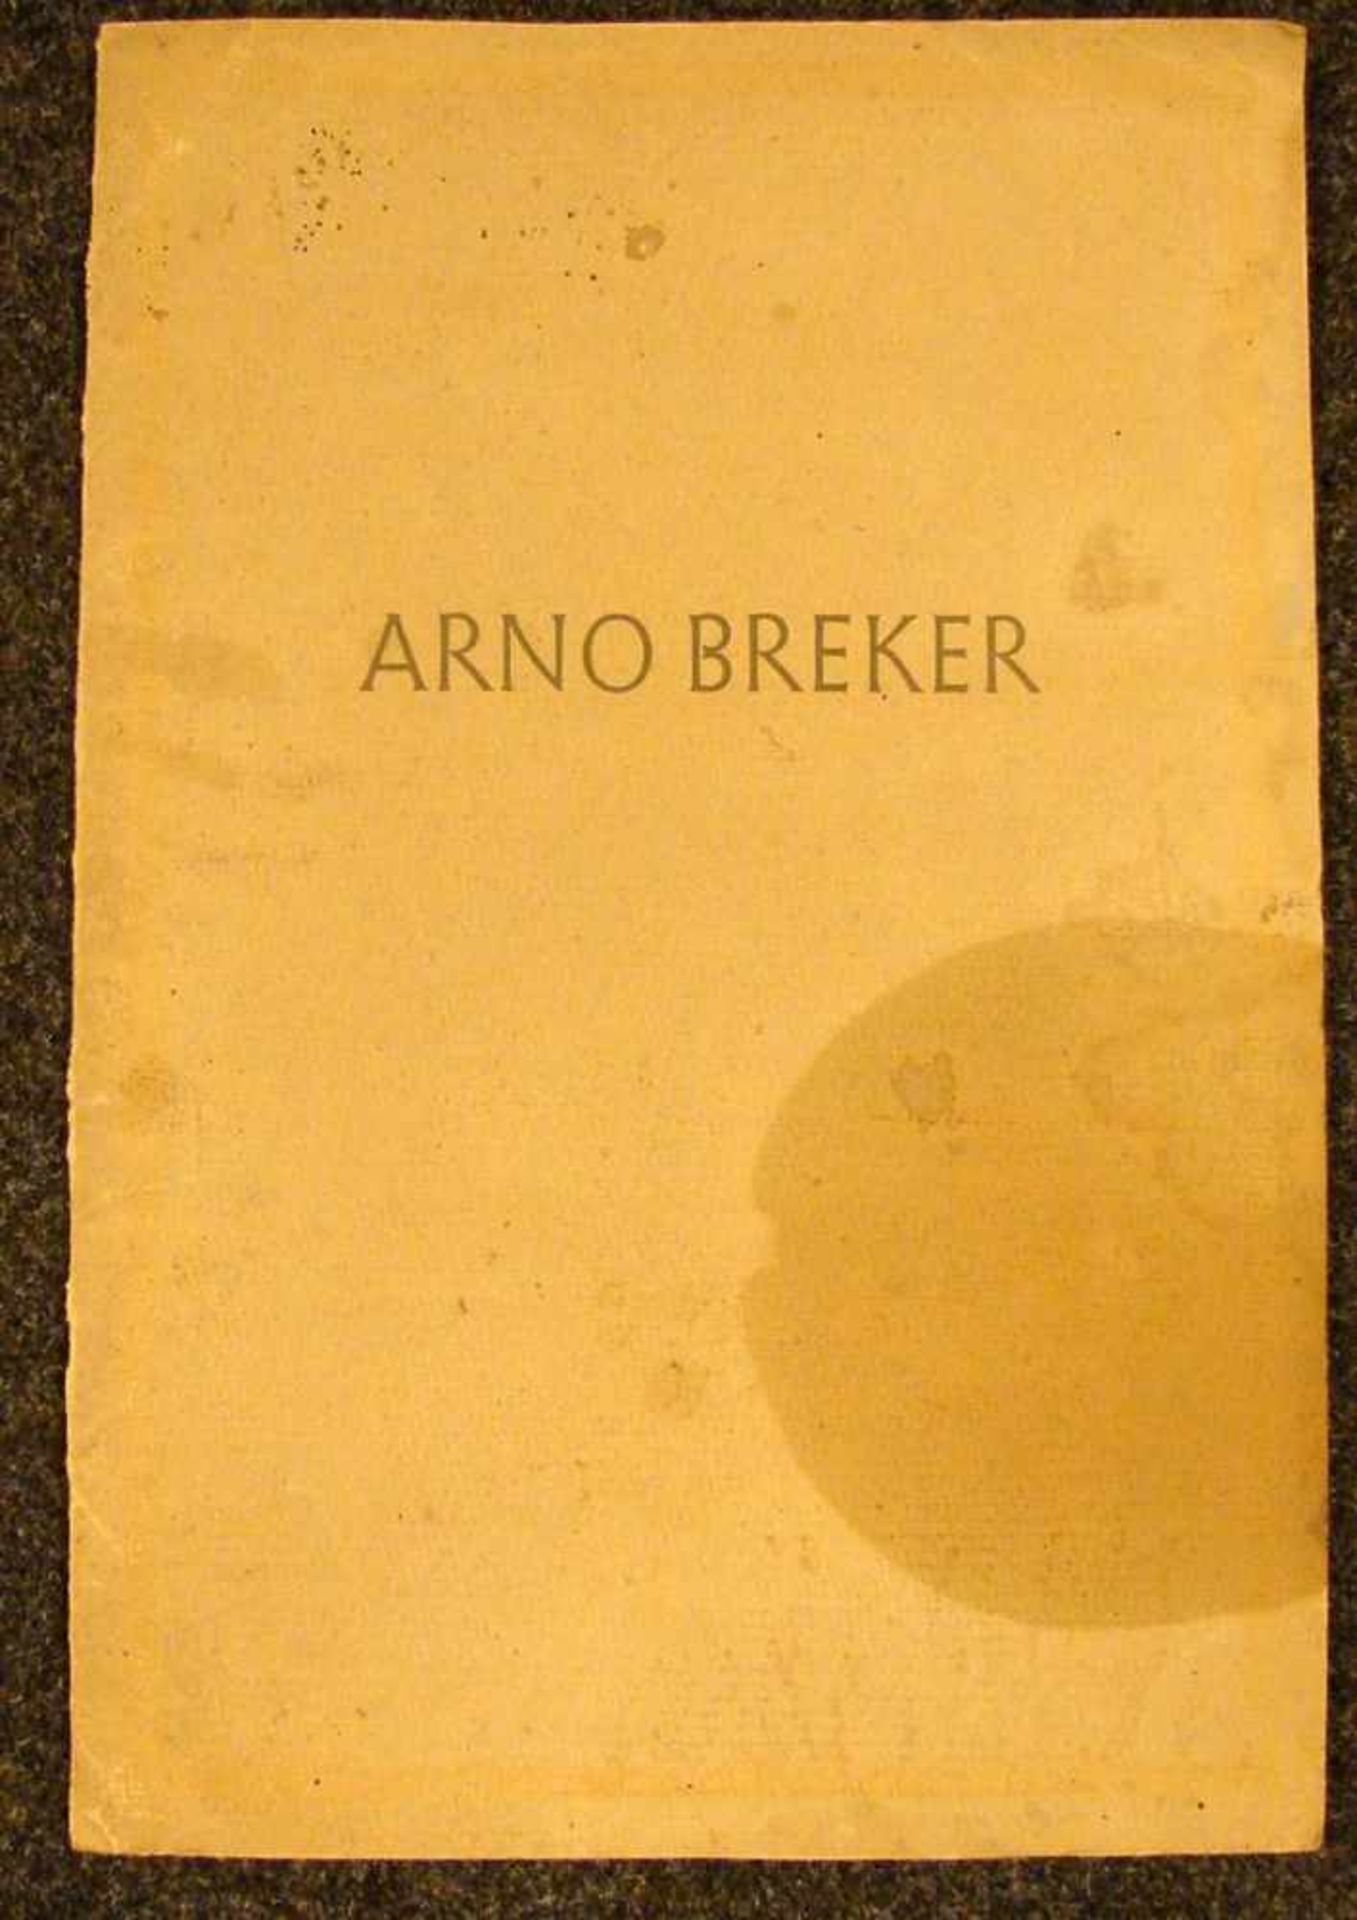 ARNO BREKER, 10 Zeichnungen, "Akte", im Verlag von Eduard Stichnote, Potzdam,